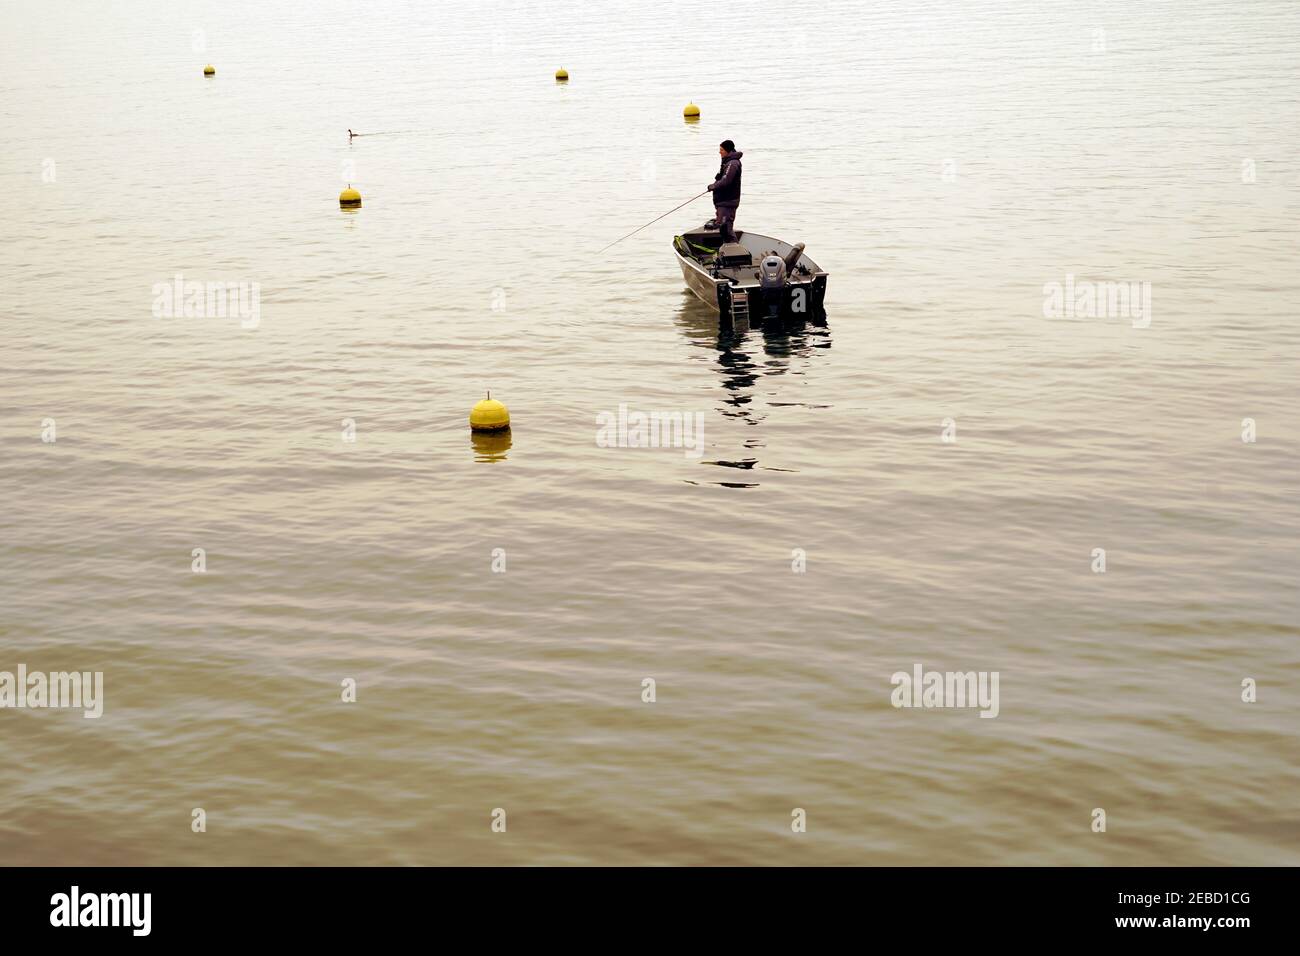 Un uomo che pesca sul lago di Zurigo in inverno. Il pescatore è in piedi in una barca e ci sono boe gialle sulla superficie dell'acqua intorno a lui. Foto Stock